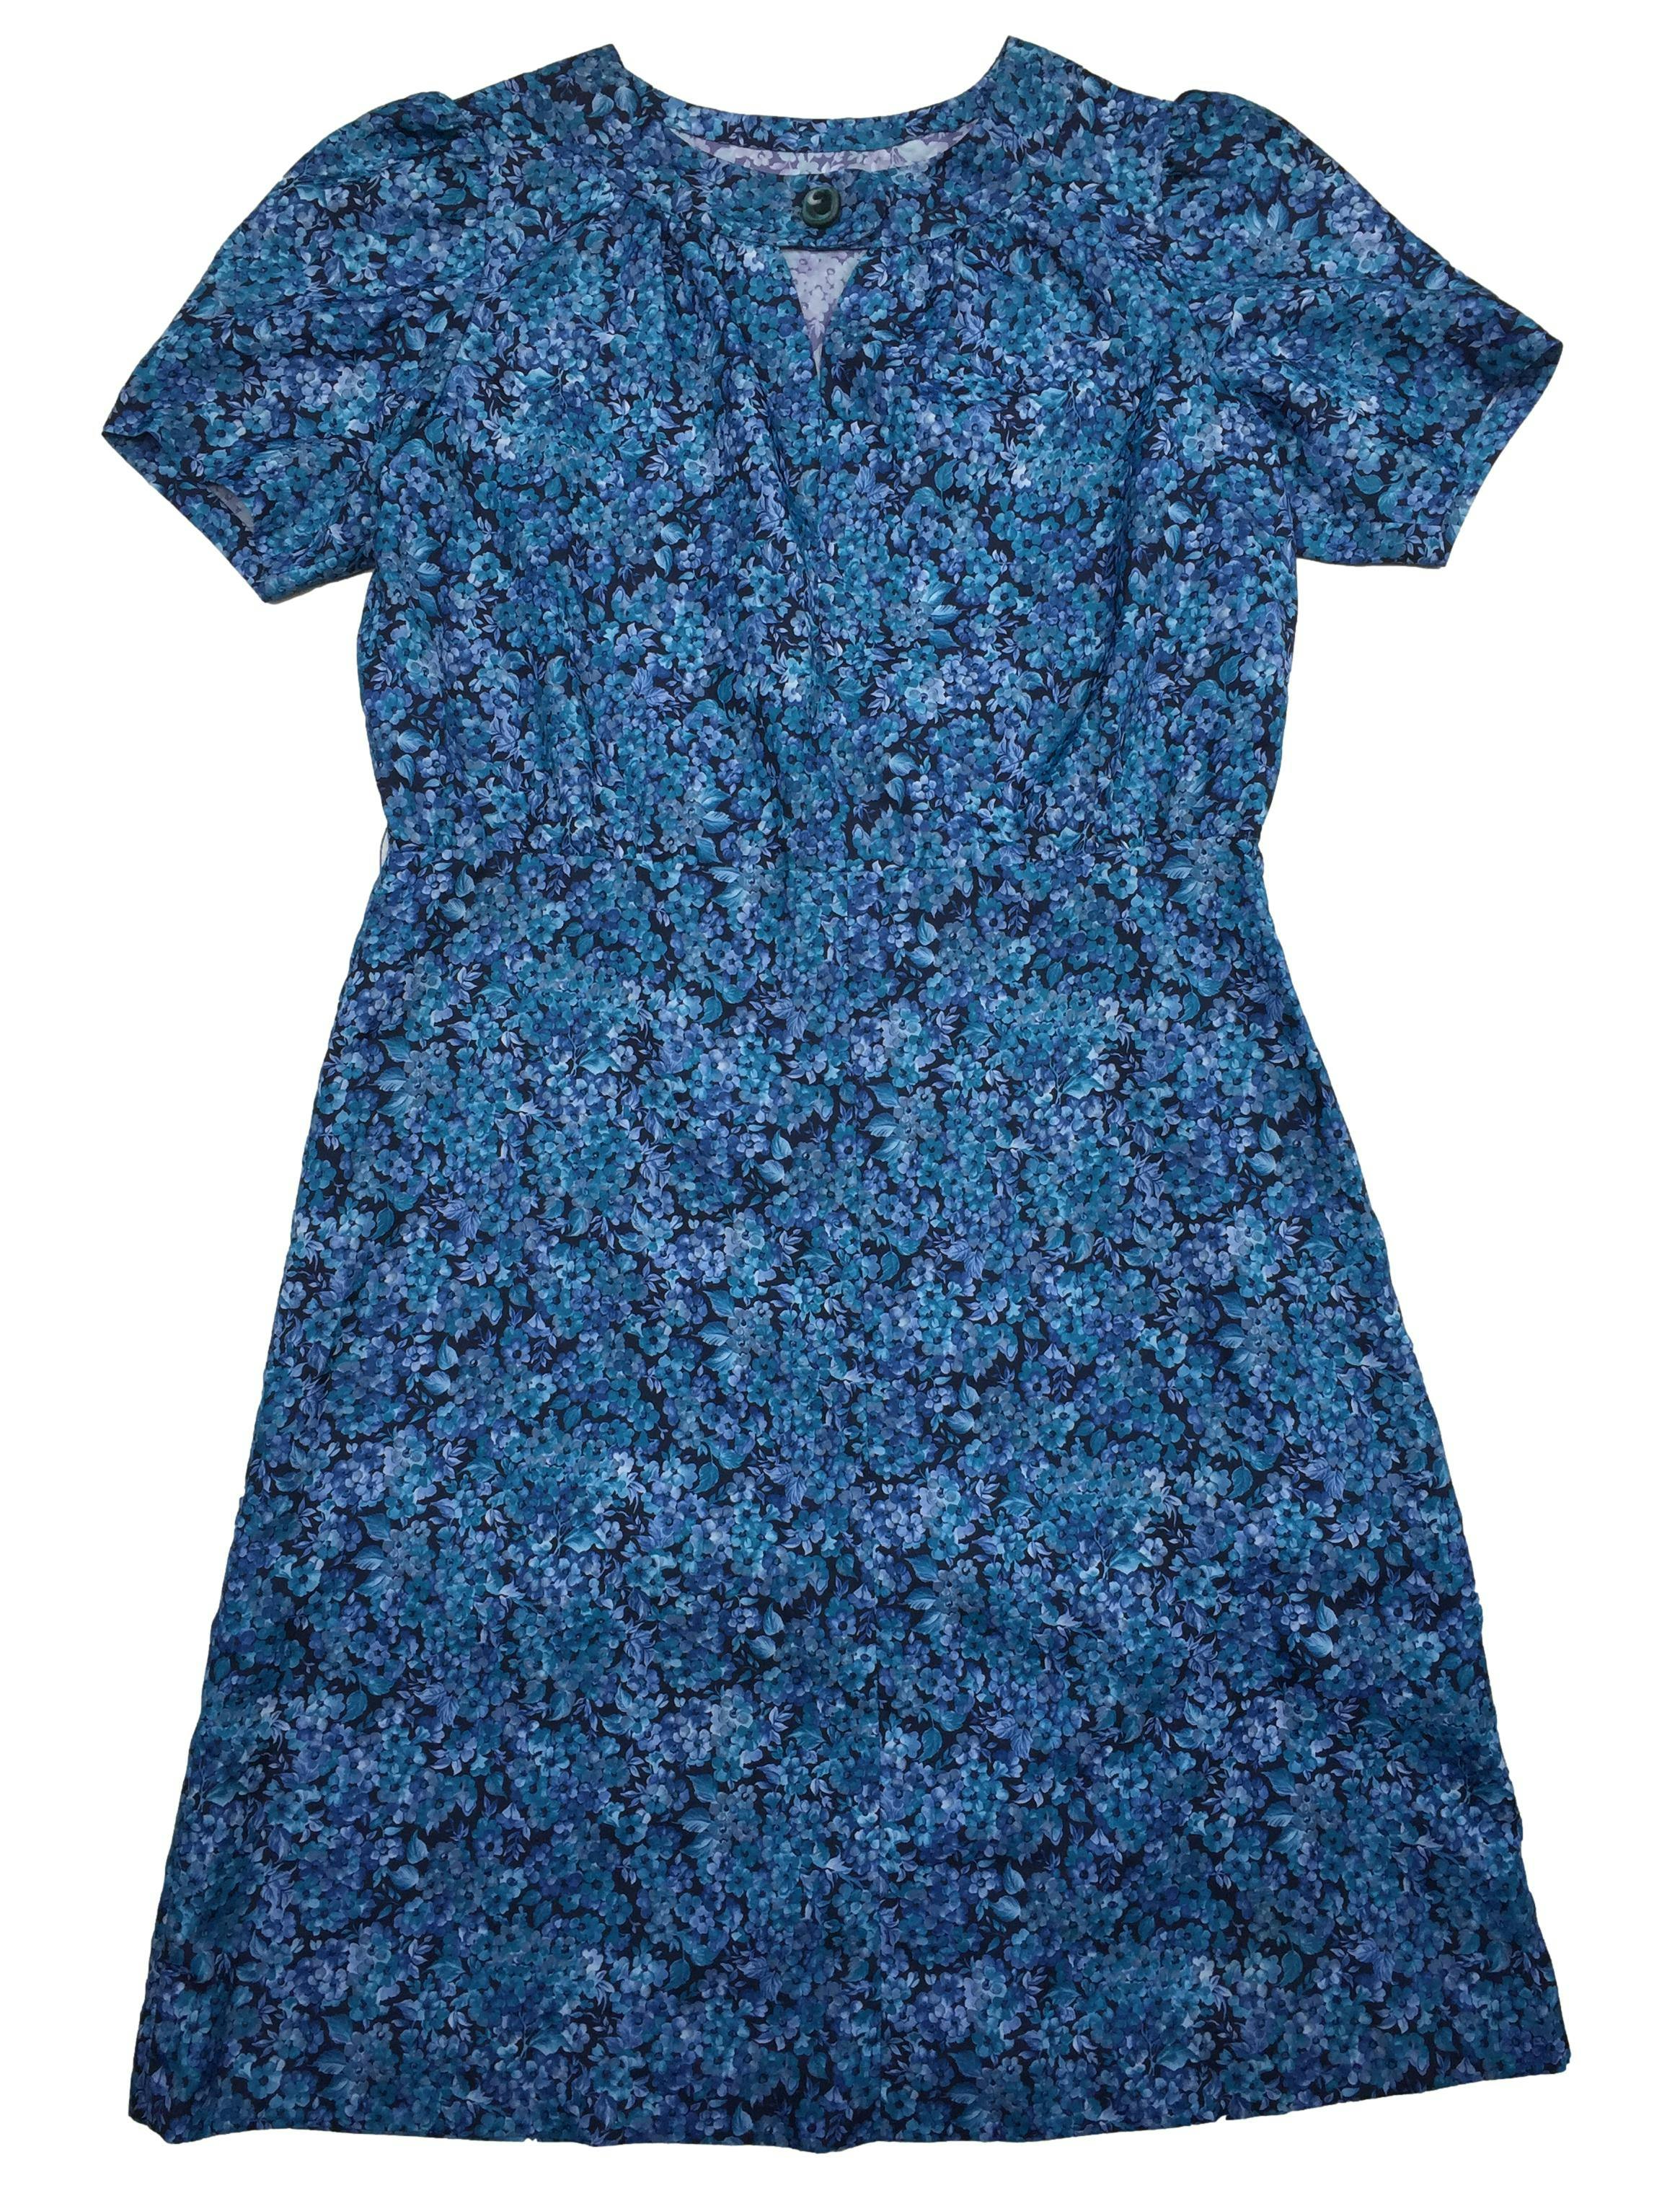 Vestido vintage azul con flores, botón y abertura en cuello, cierre lateral. Busto: 110cm. Largo: 102cm